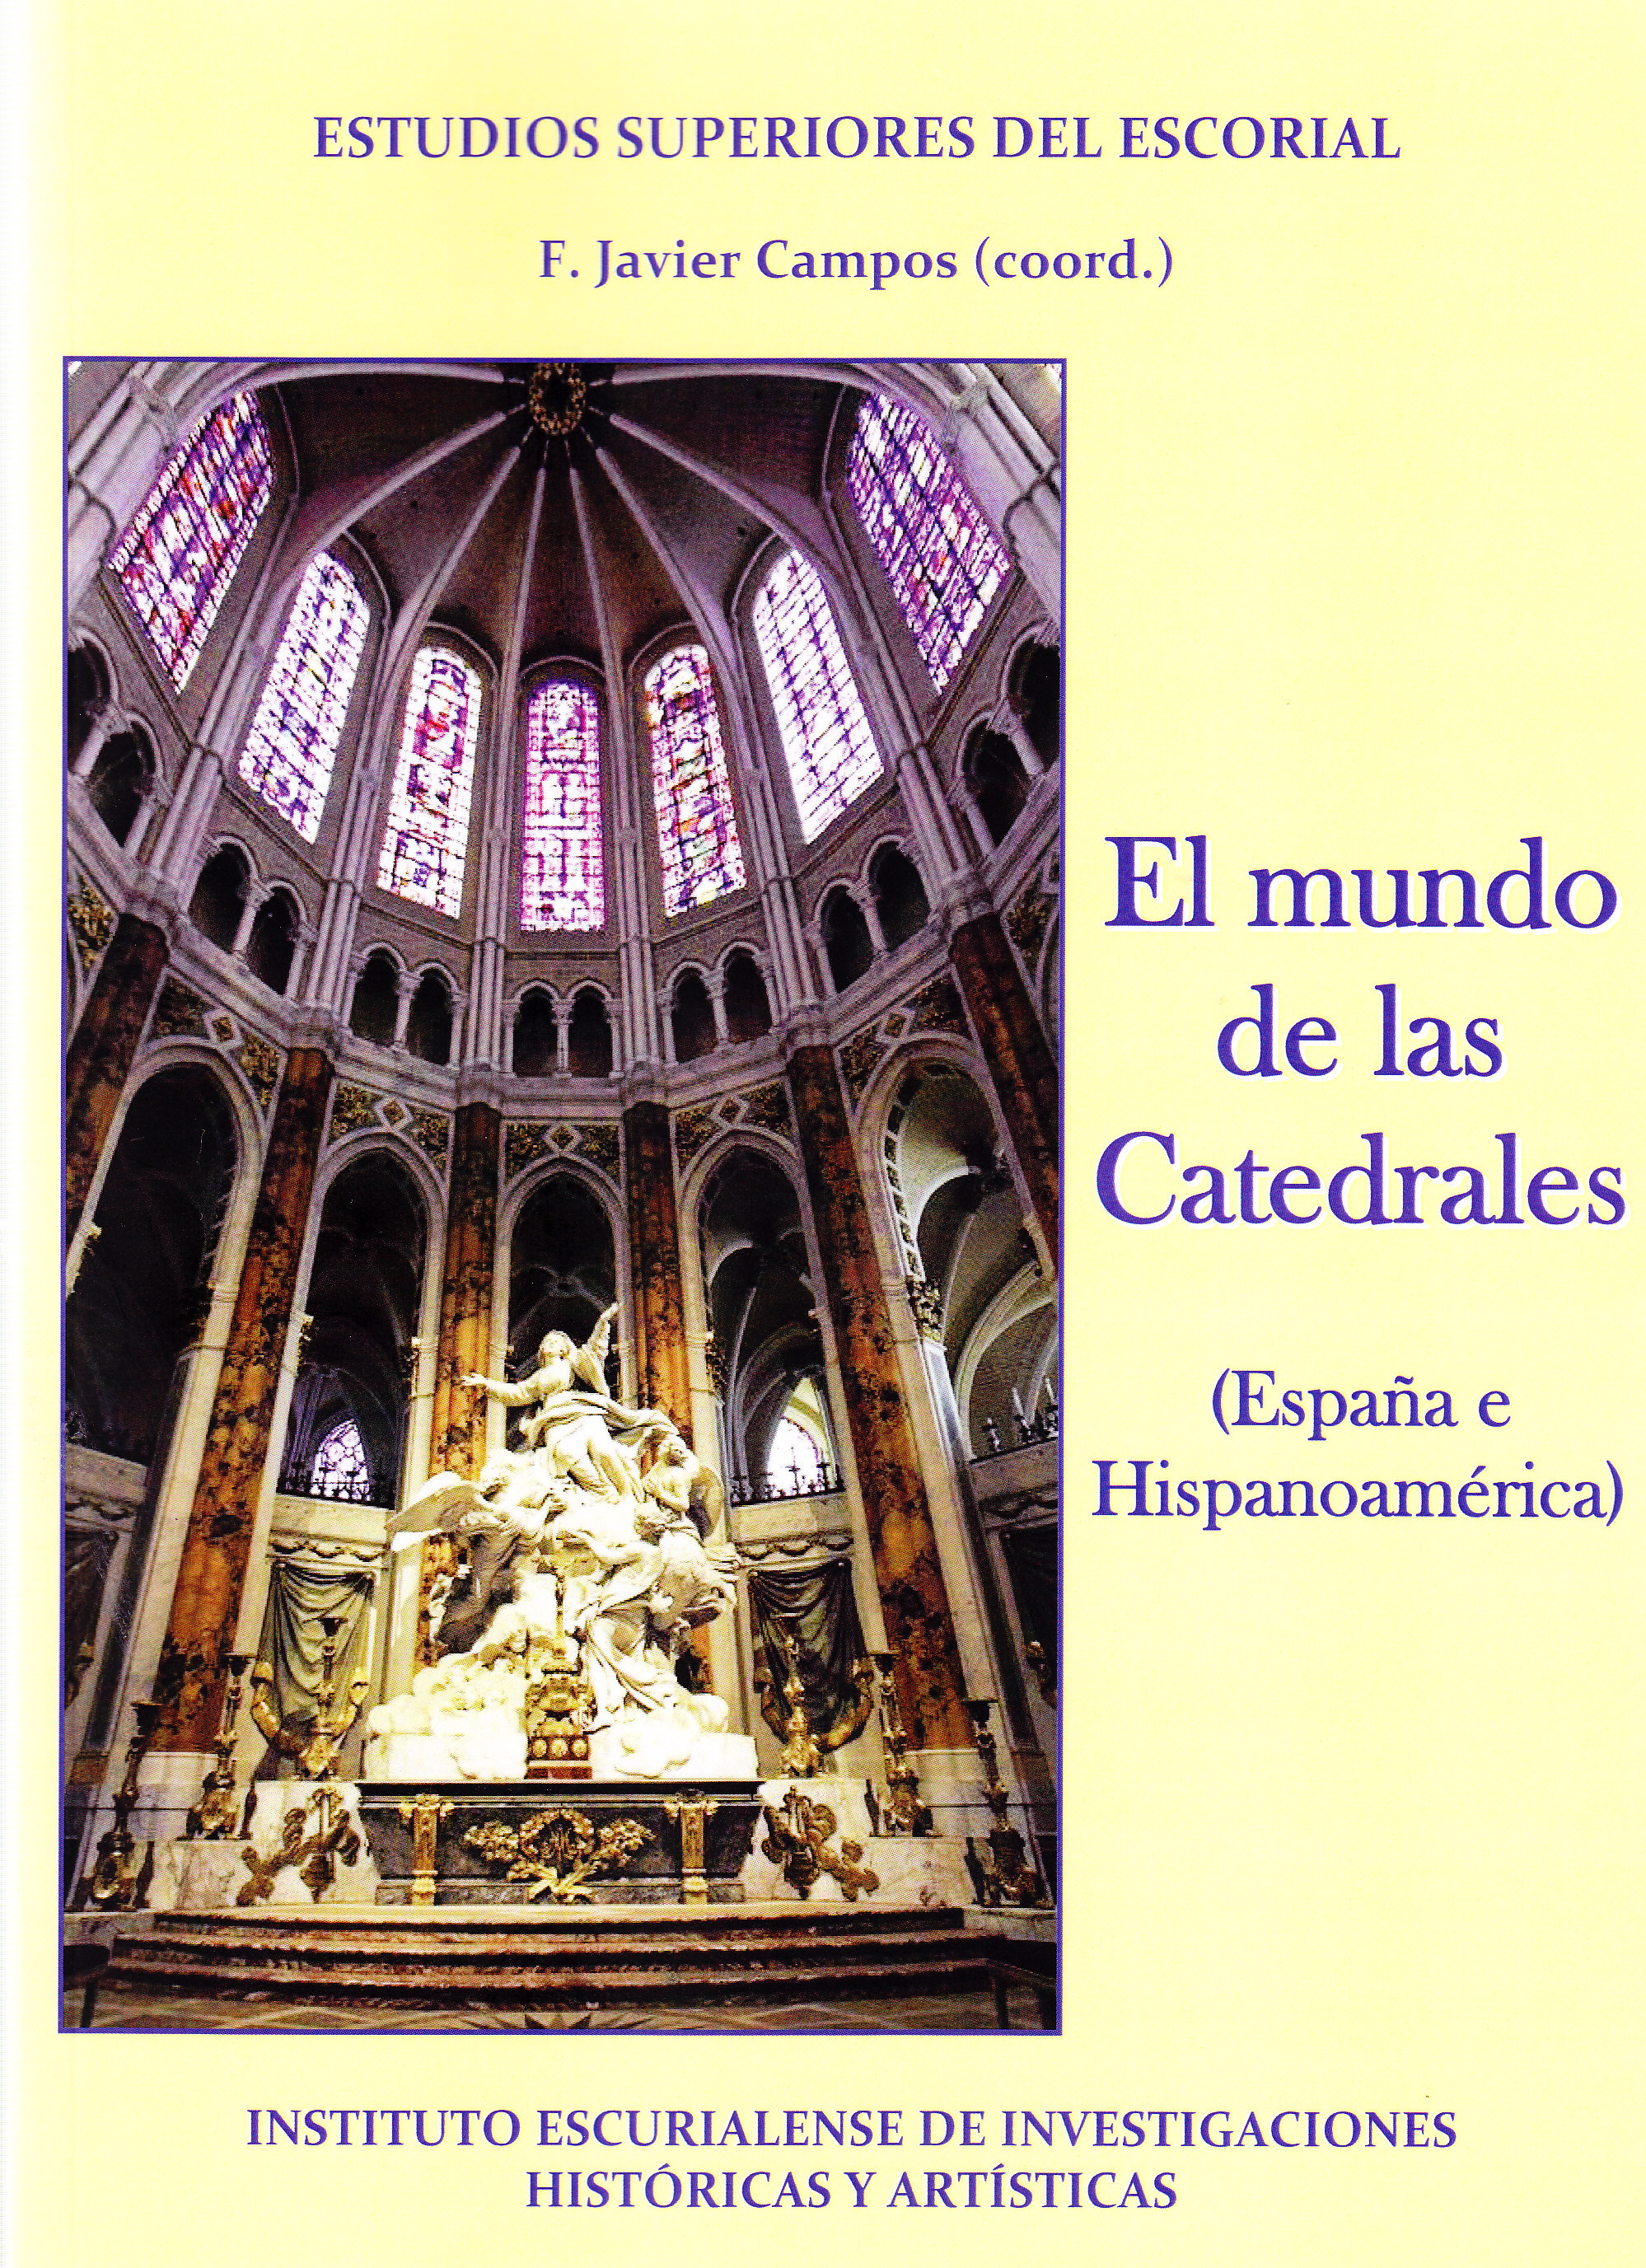 Imagen de portada del libro El Mundo de las Catedrales